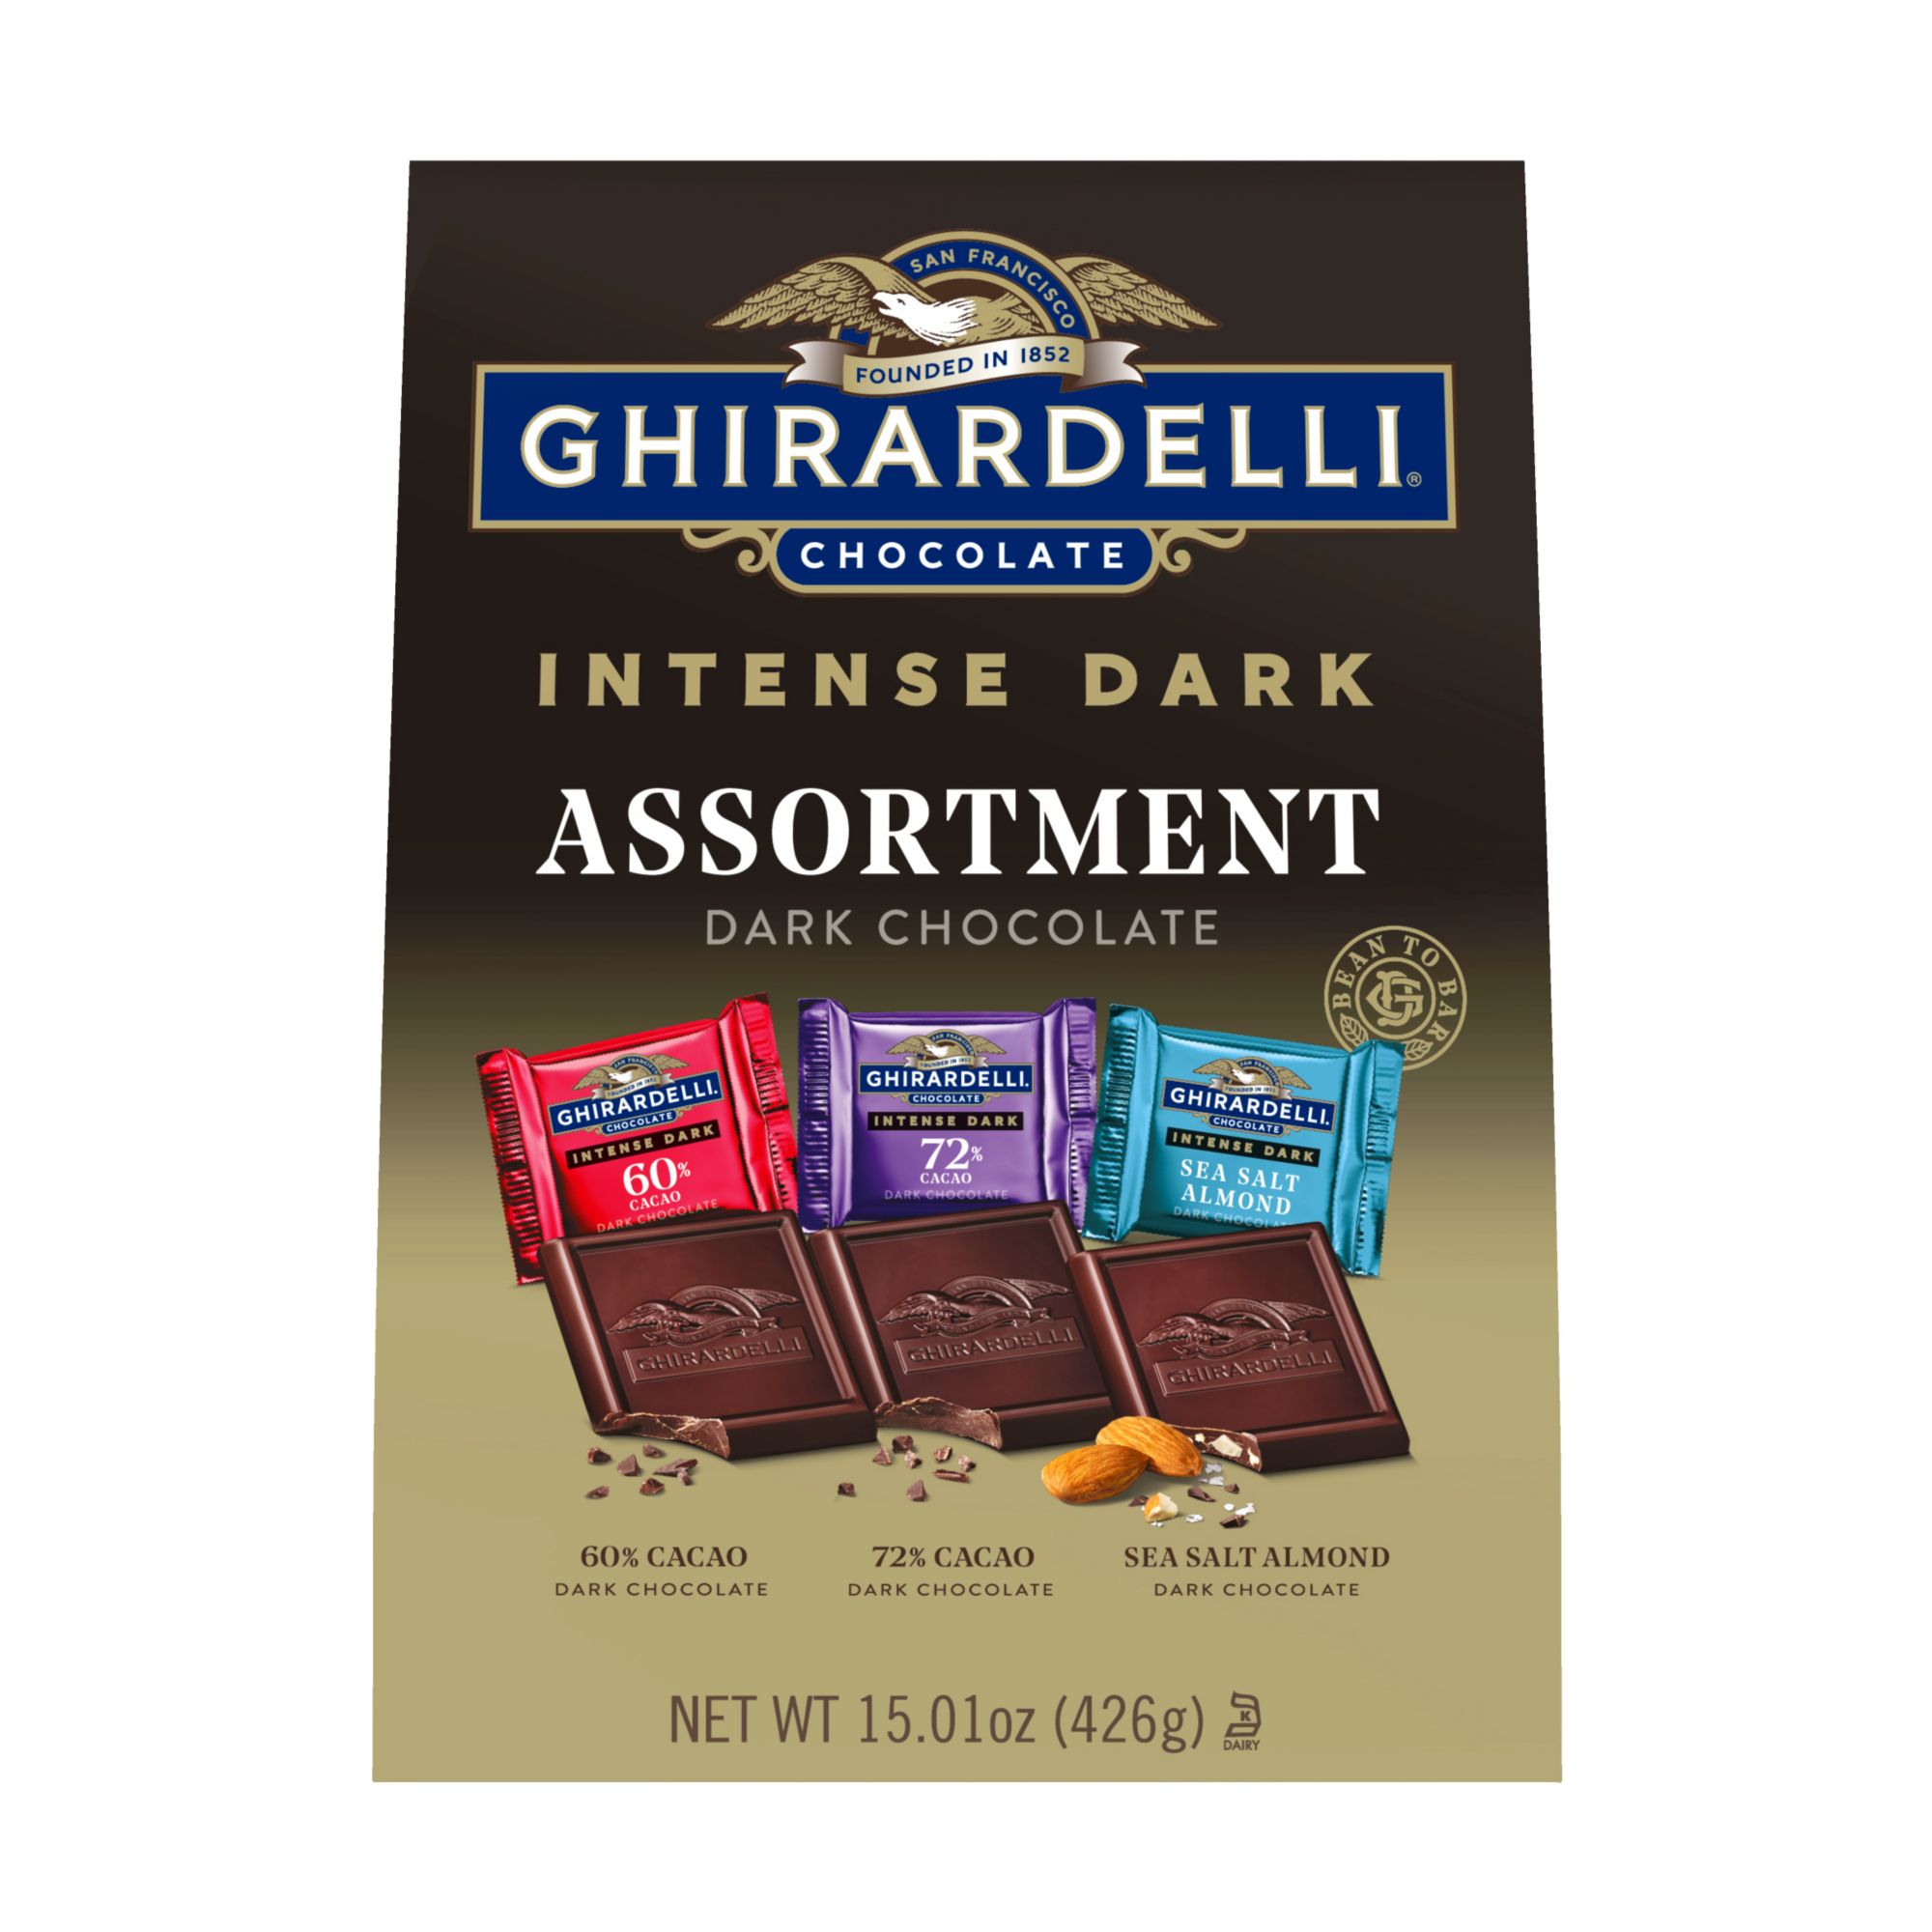 Ghirardelli Intense Dark Chocolate Premium Collection, 15.01 oz.